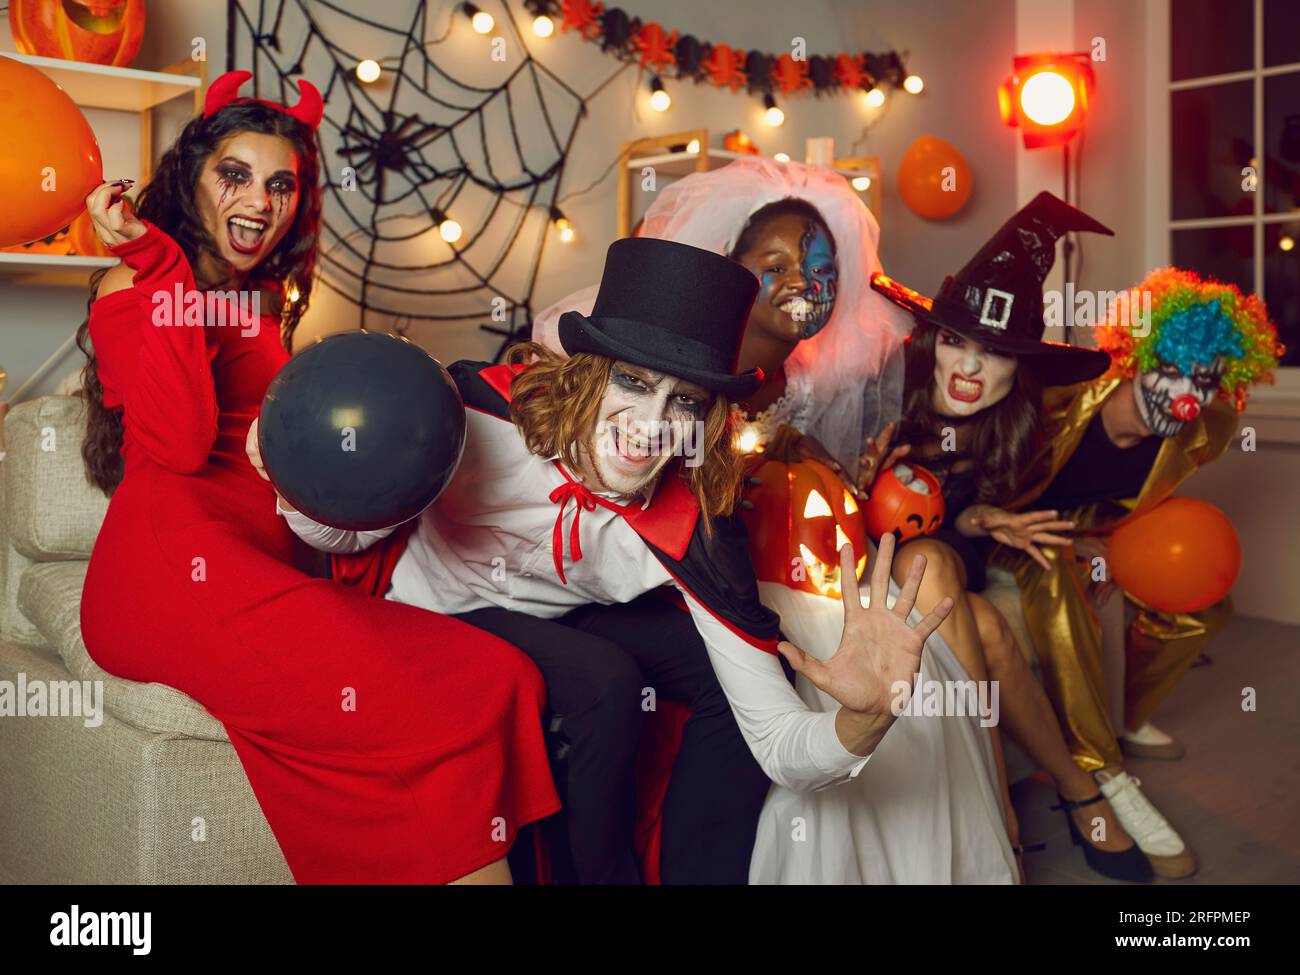 Glückliche Erwachsene Freunde in gruseligen Kostümen, die Spaß auf der Halloween-Party haben Stockfoto